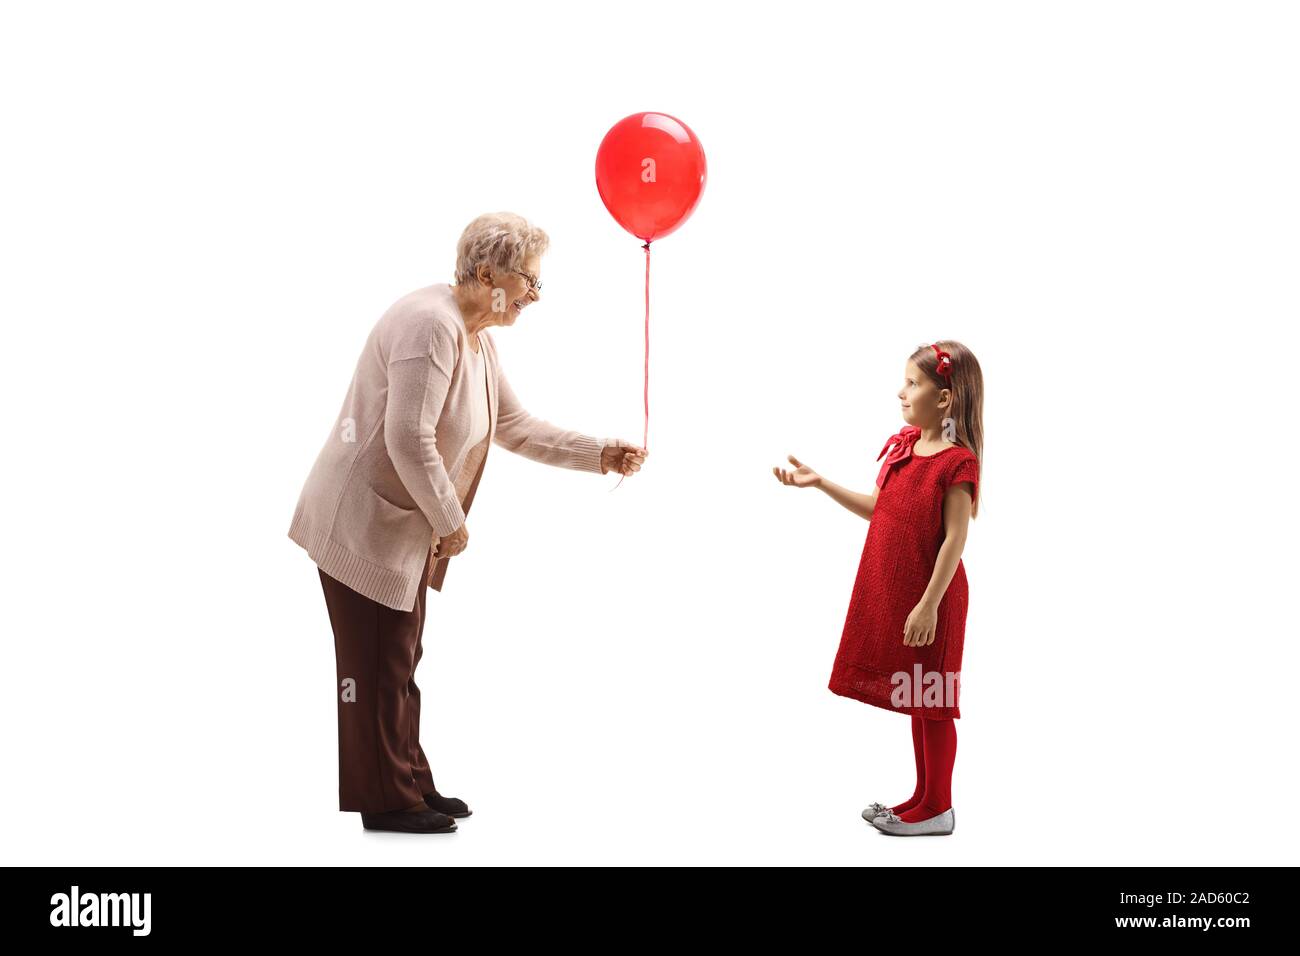 Profil de pleine longueur tourné d'une grand-mère en donnant un ballon rouge à une fille dans une robe rouge isolé sur fond blanc Banque D'Images